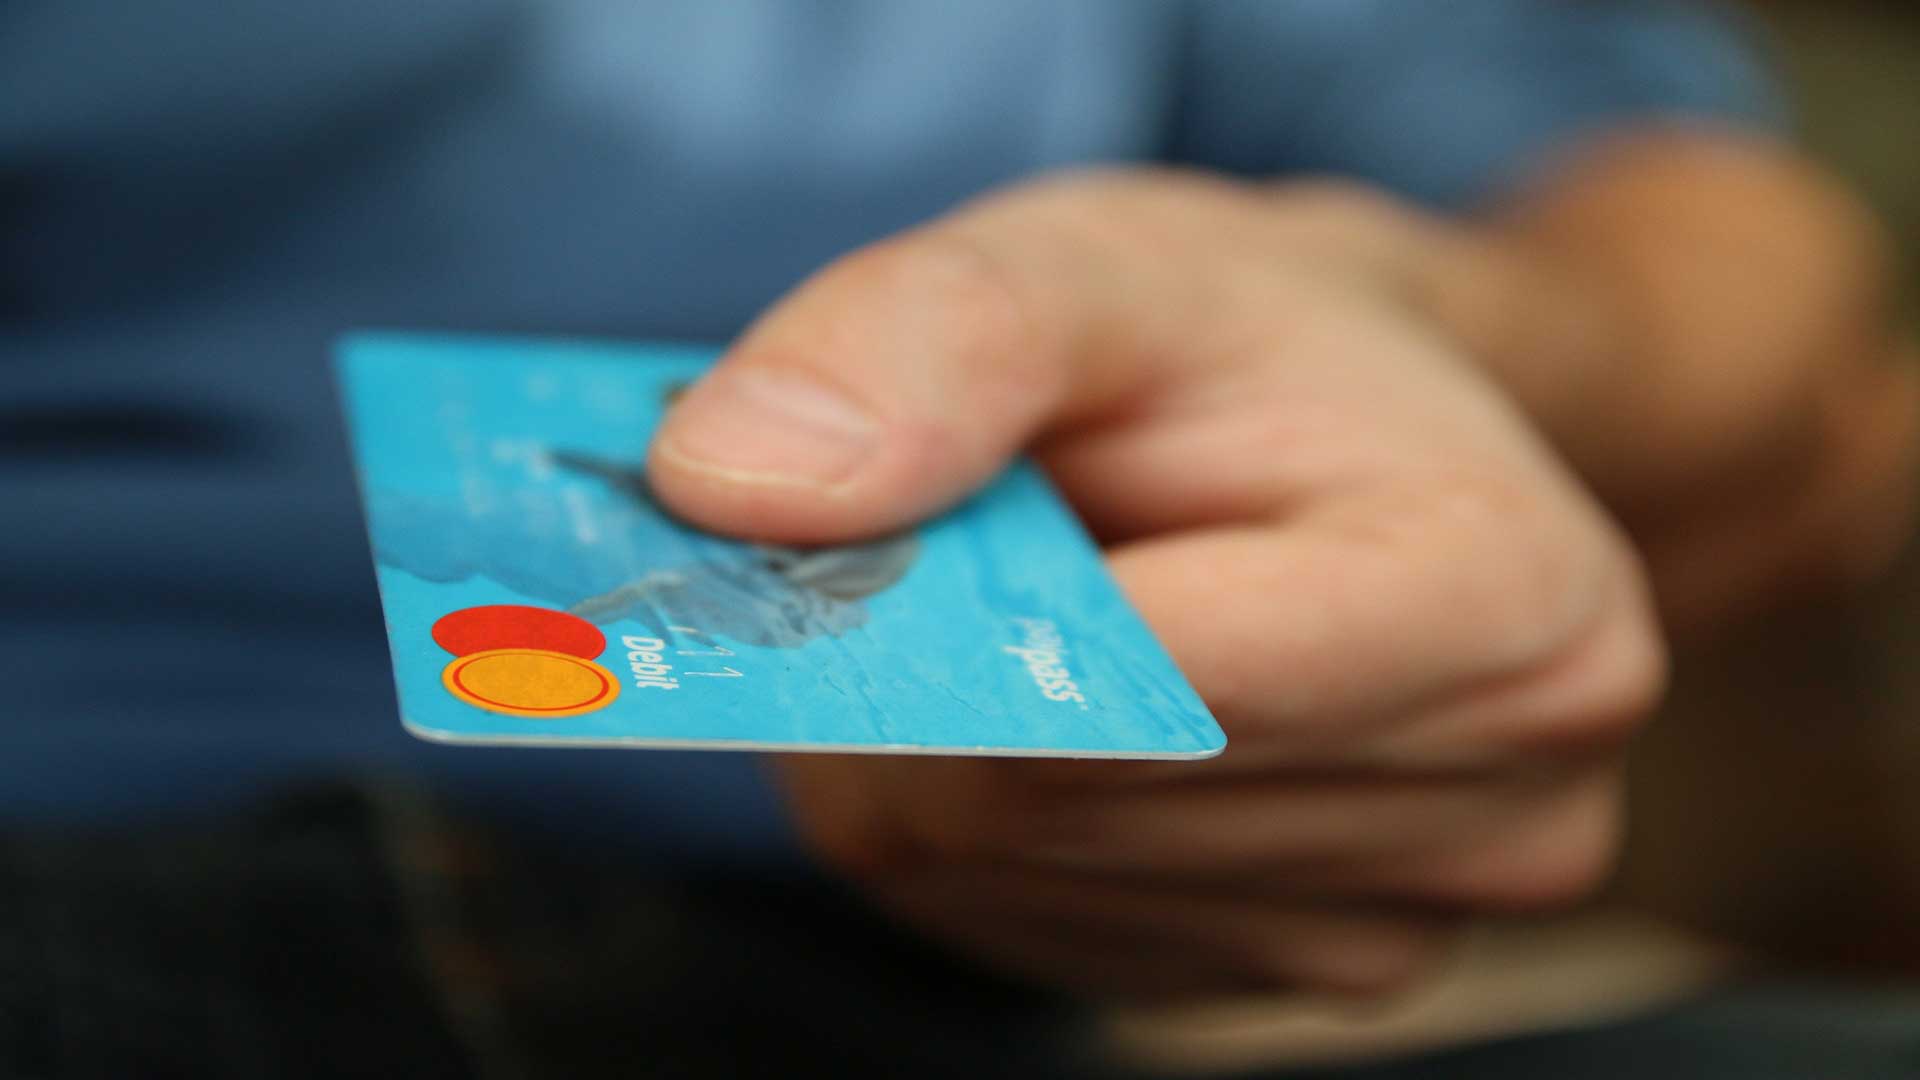 Persona entregando tarjeta de crédito para pagar.